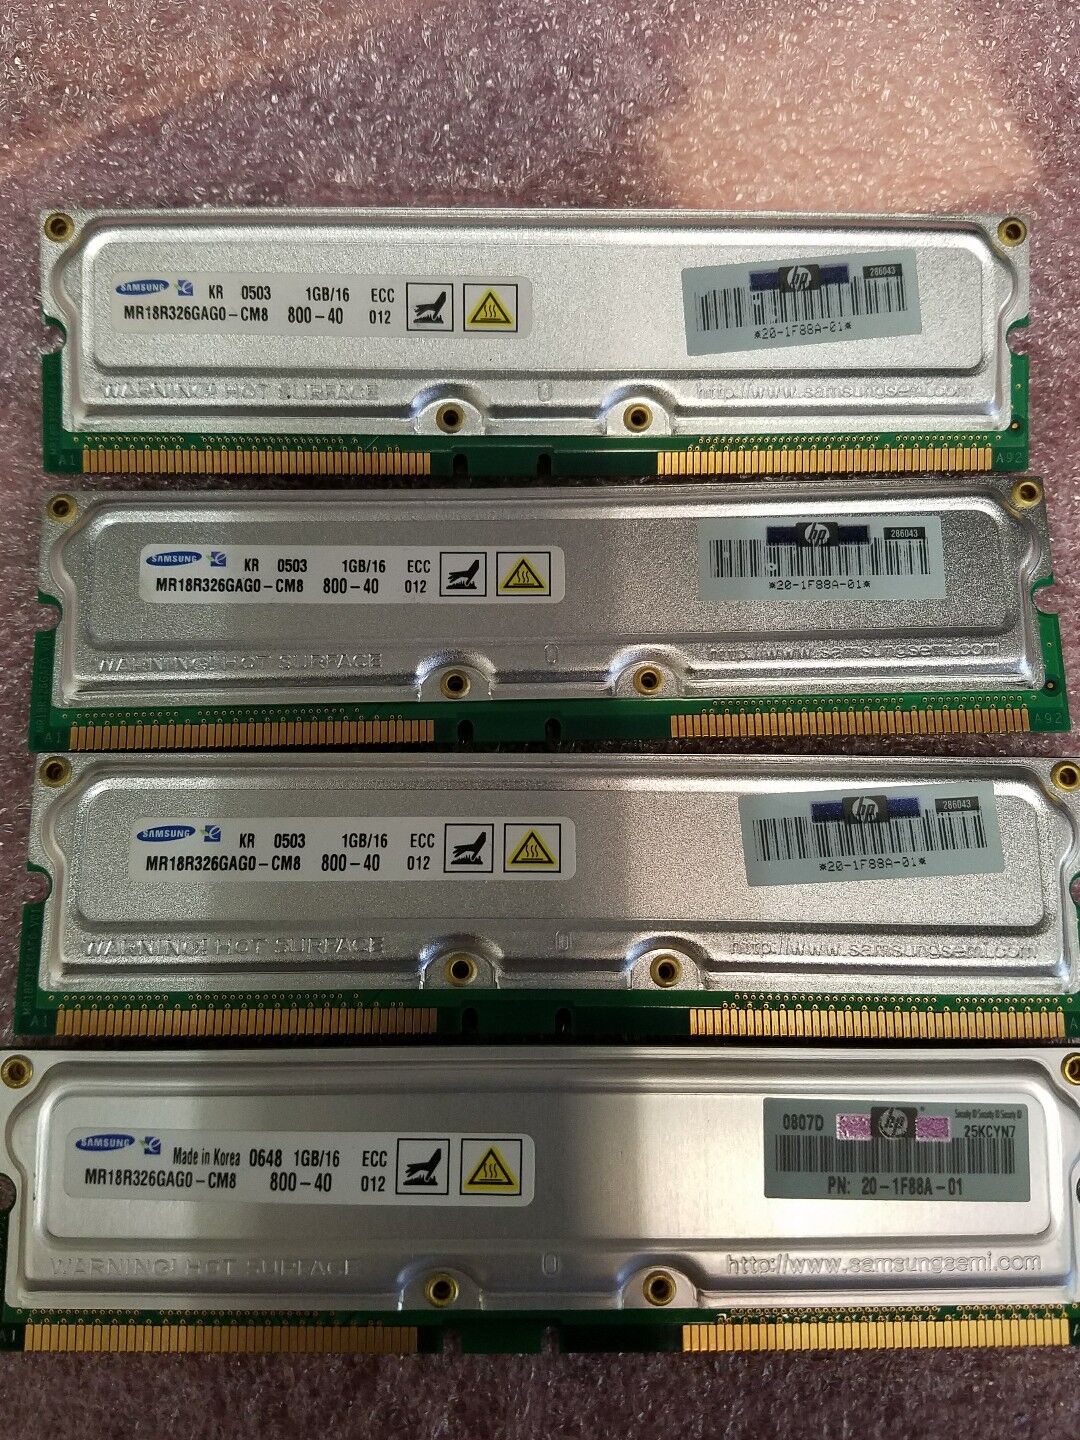 4GB (4x) 1GB 800-40 RDRAM HP DEC ES47 ES80 GS1280 20-1F88A-01 3X-MS7AB-DB Memory